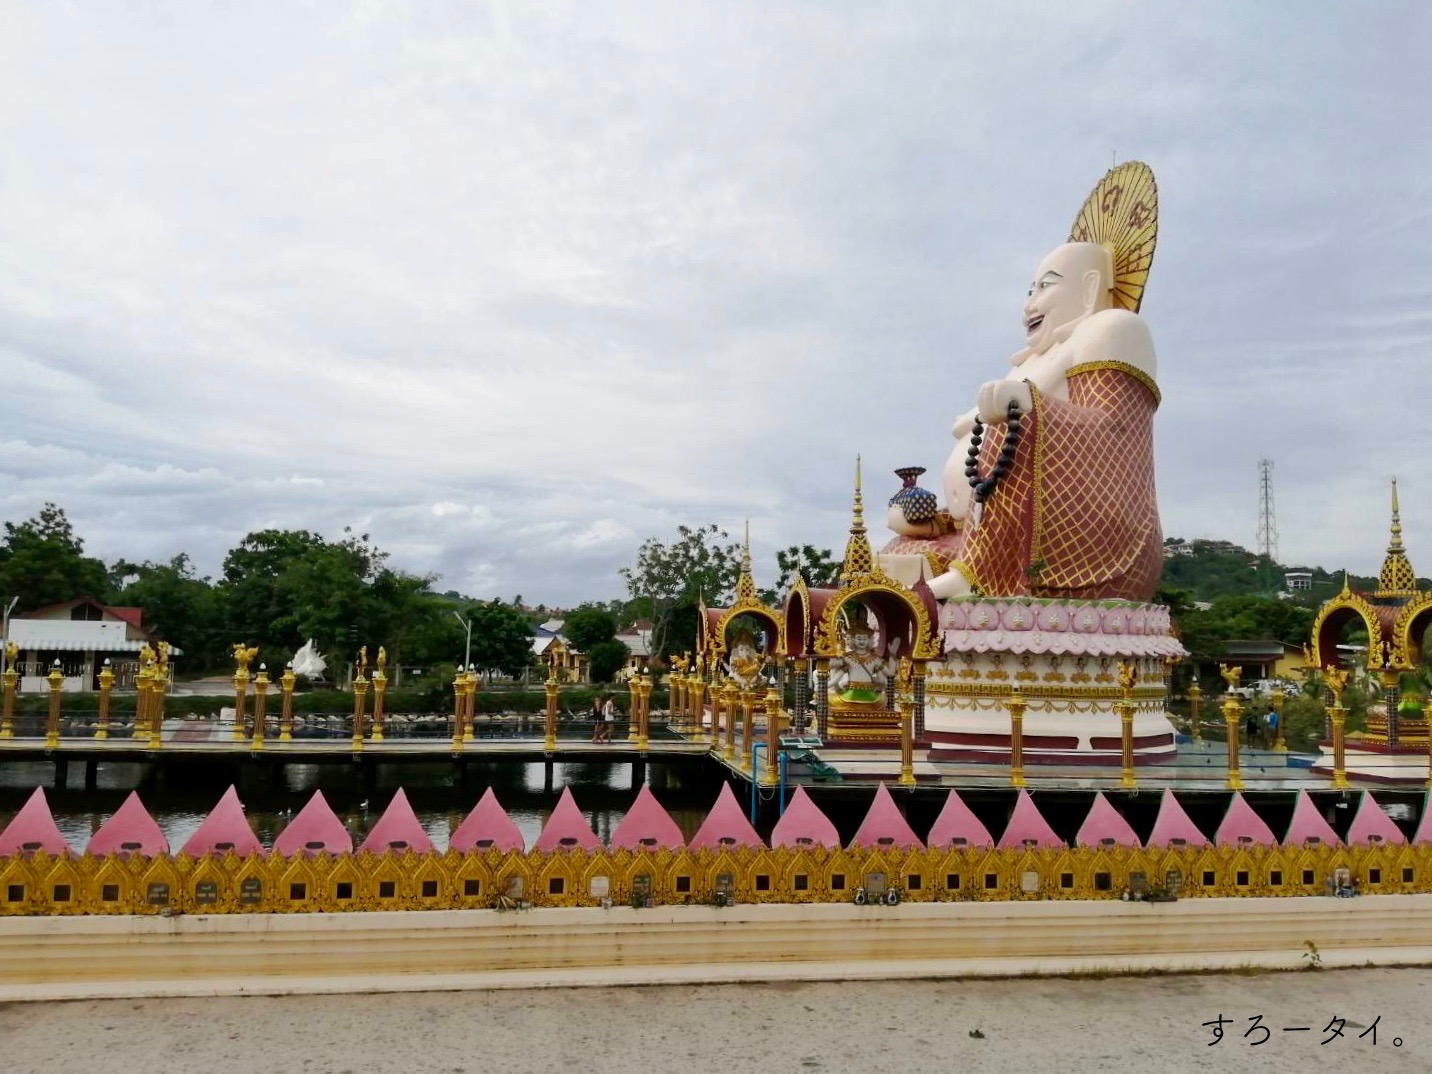 Wat Plai Laem　ワットプライレーム　ワットスワンナラム　サムイ島